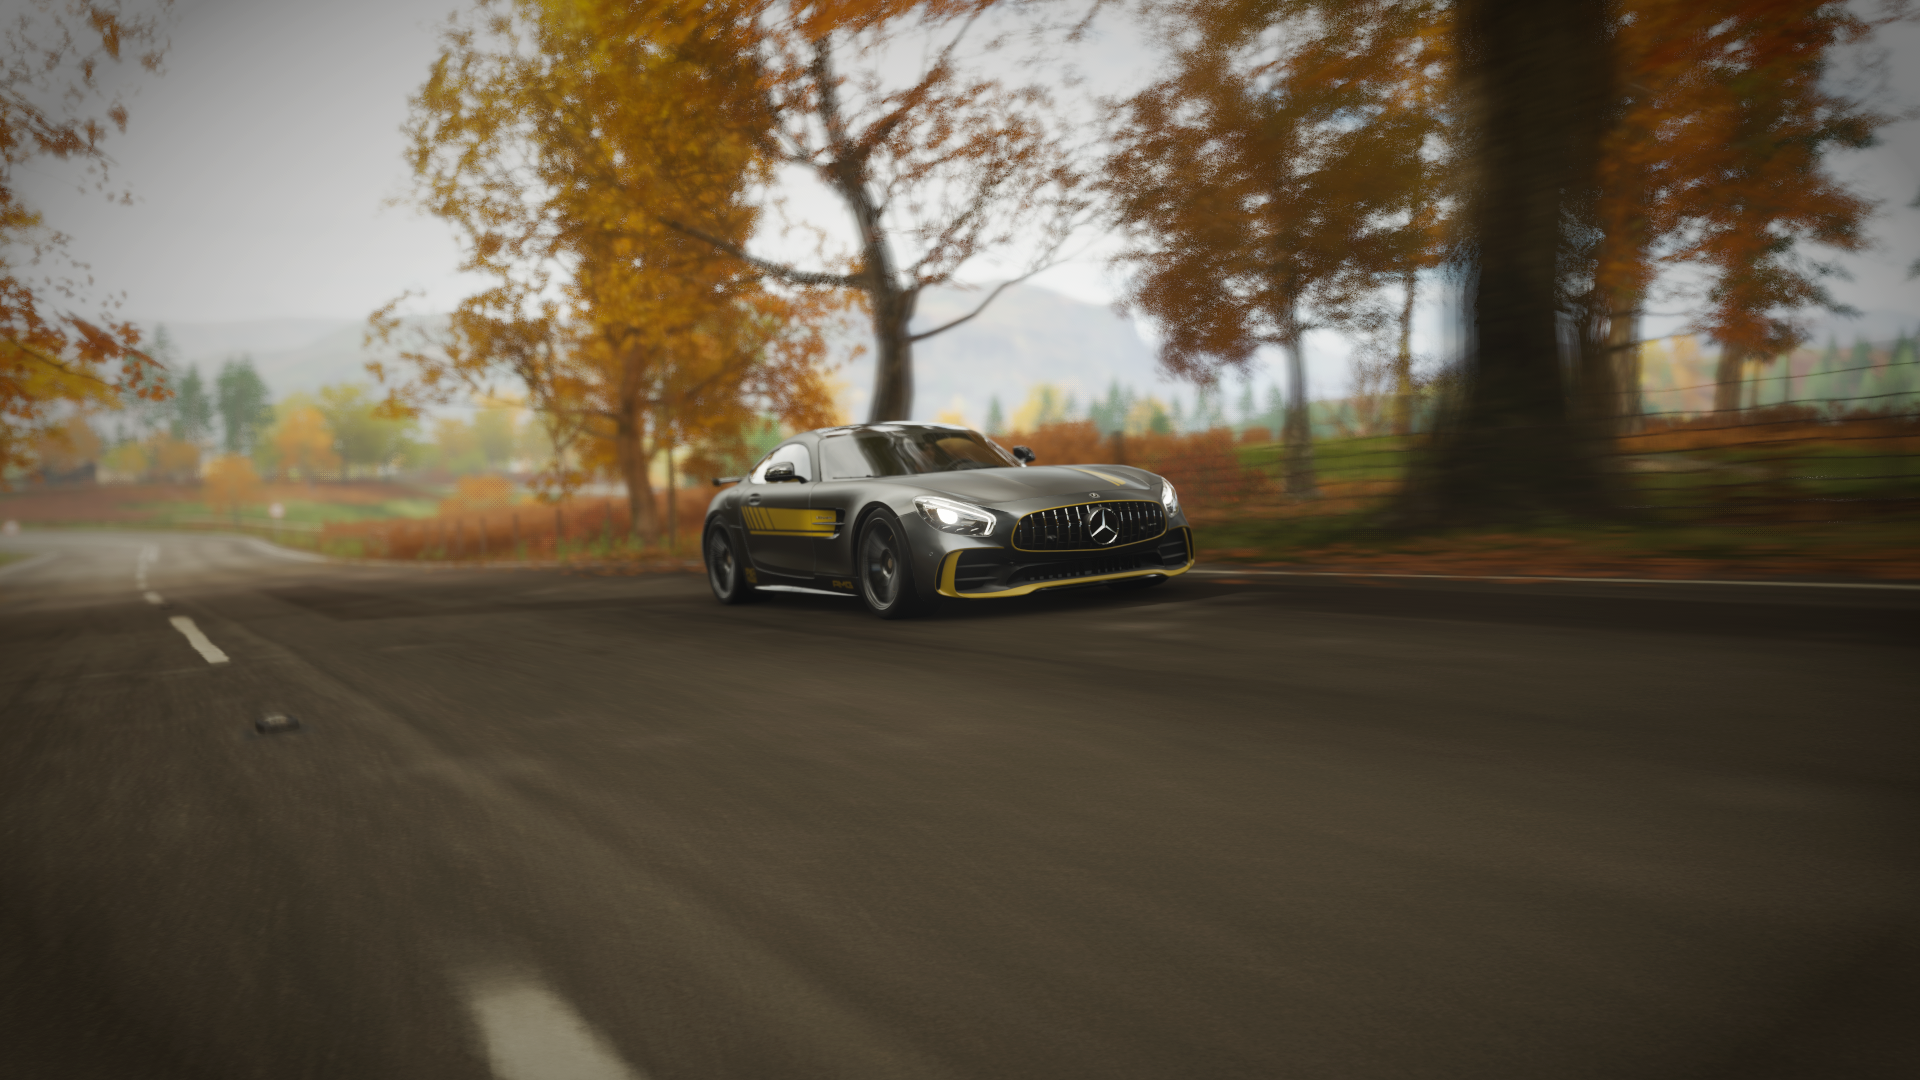 General 1920x1080 car Forza Horizon 4 video games Mercedes-AMG GT screen shot Mercedes-Benz gray cars racing road asphalt